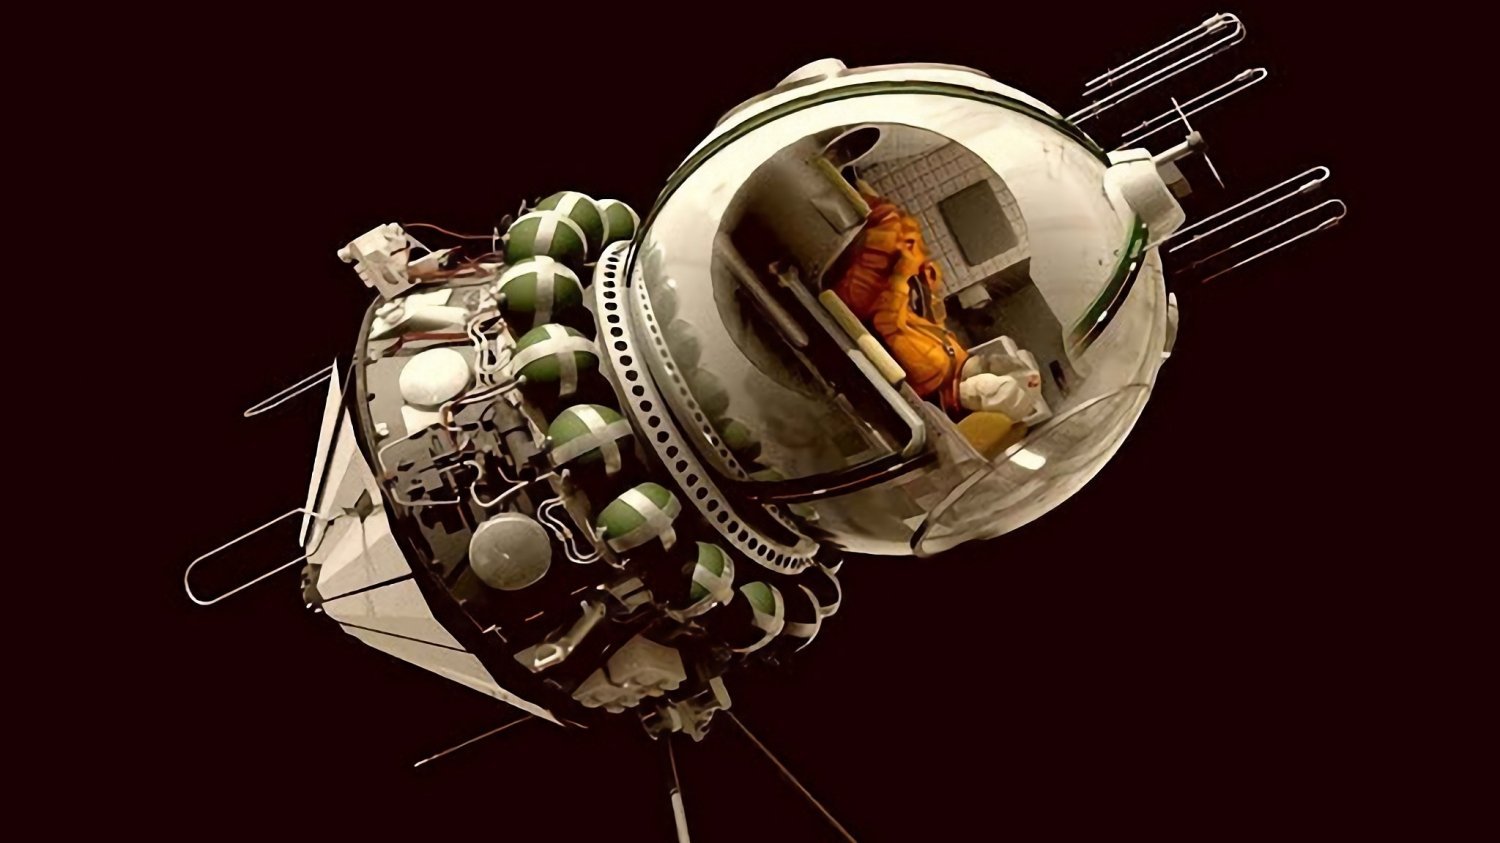 Первый корабль полетевший в космос. Корабль Восток 1 Гагарин. Восход-1 космический корабль Гагарин. Пилотируемый космический корабль «Восток-1. Восток космический корабль Гагарина.